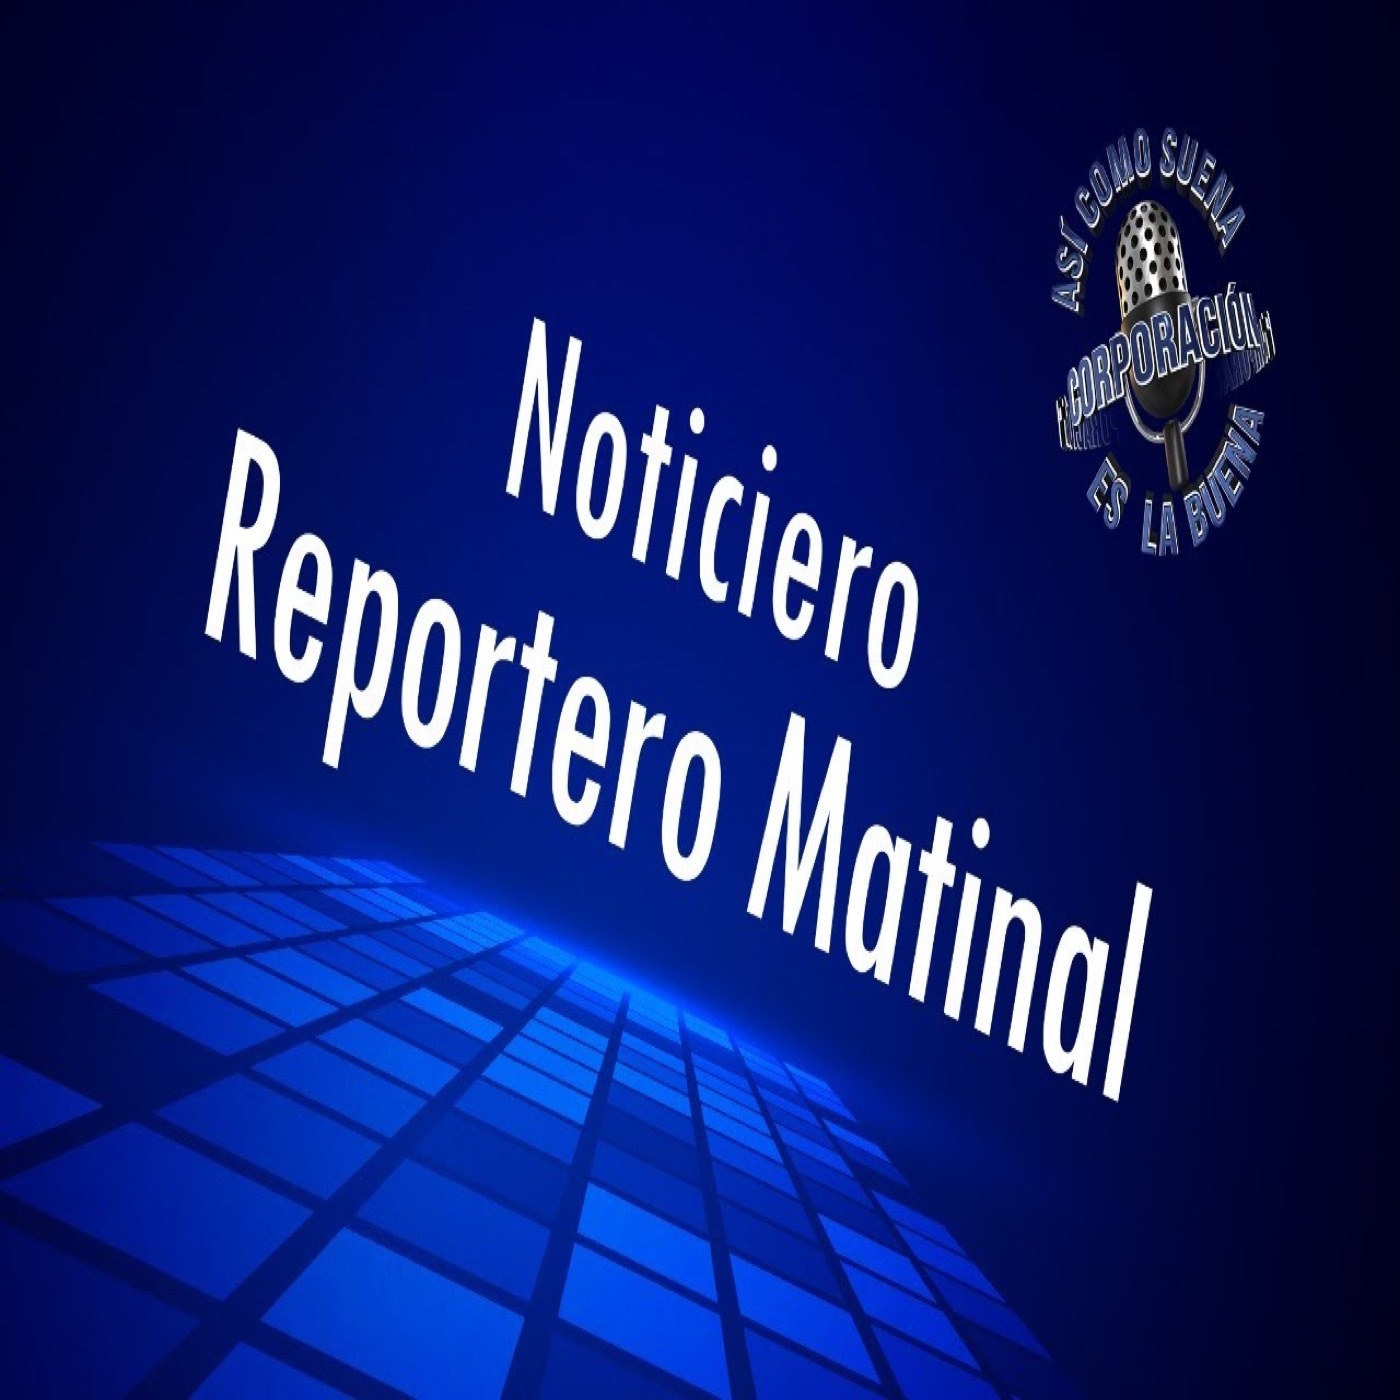 Noticiero Reportero Matinal - Friday, November 18, 2022